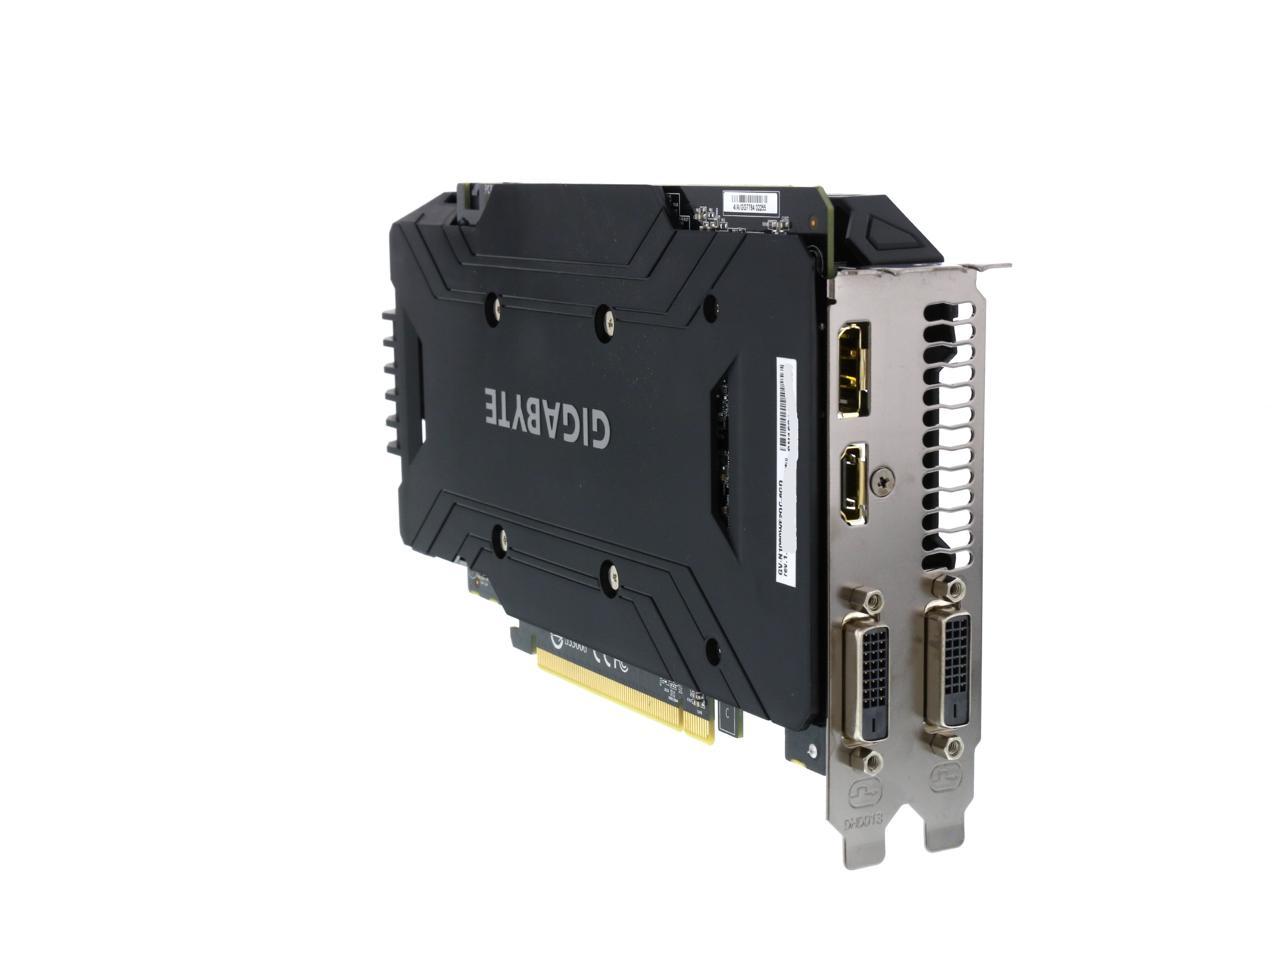 GIGABYTE GeForce GTX 1060 6GB GDDR5 PCI Express 3.0 x16 ATX Video Card  GV-N1060WF2OC-6GD